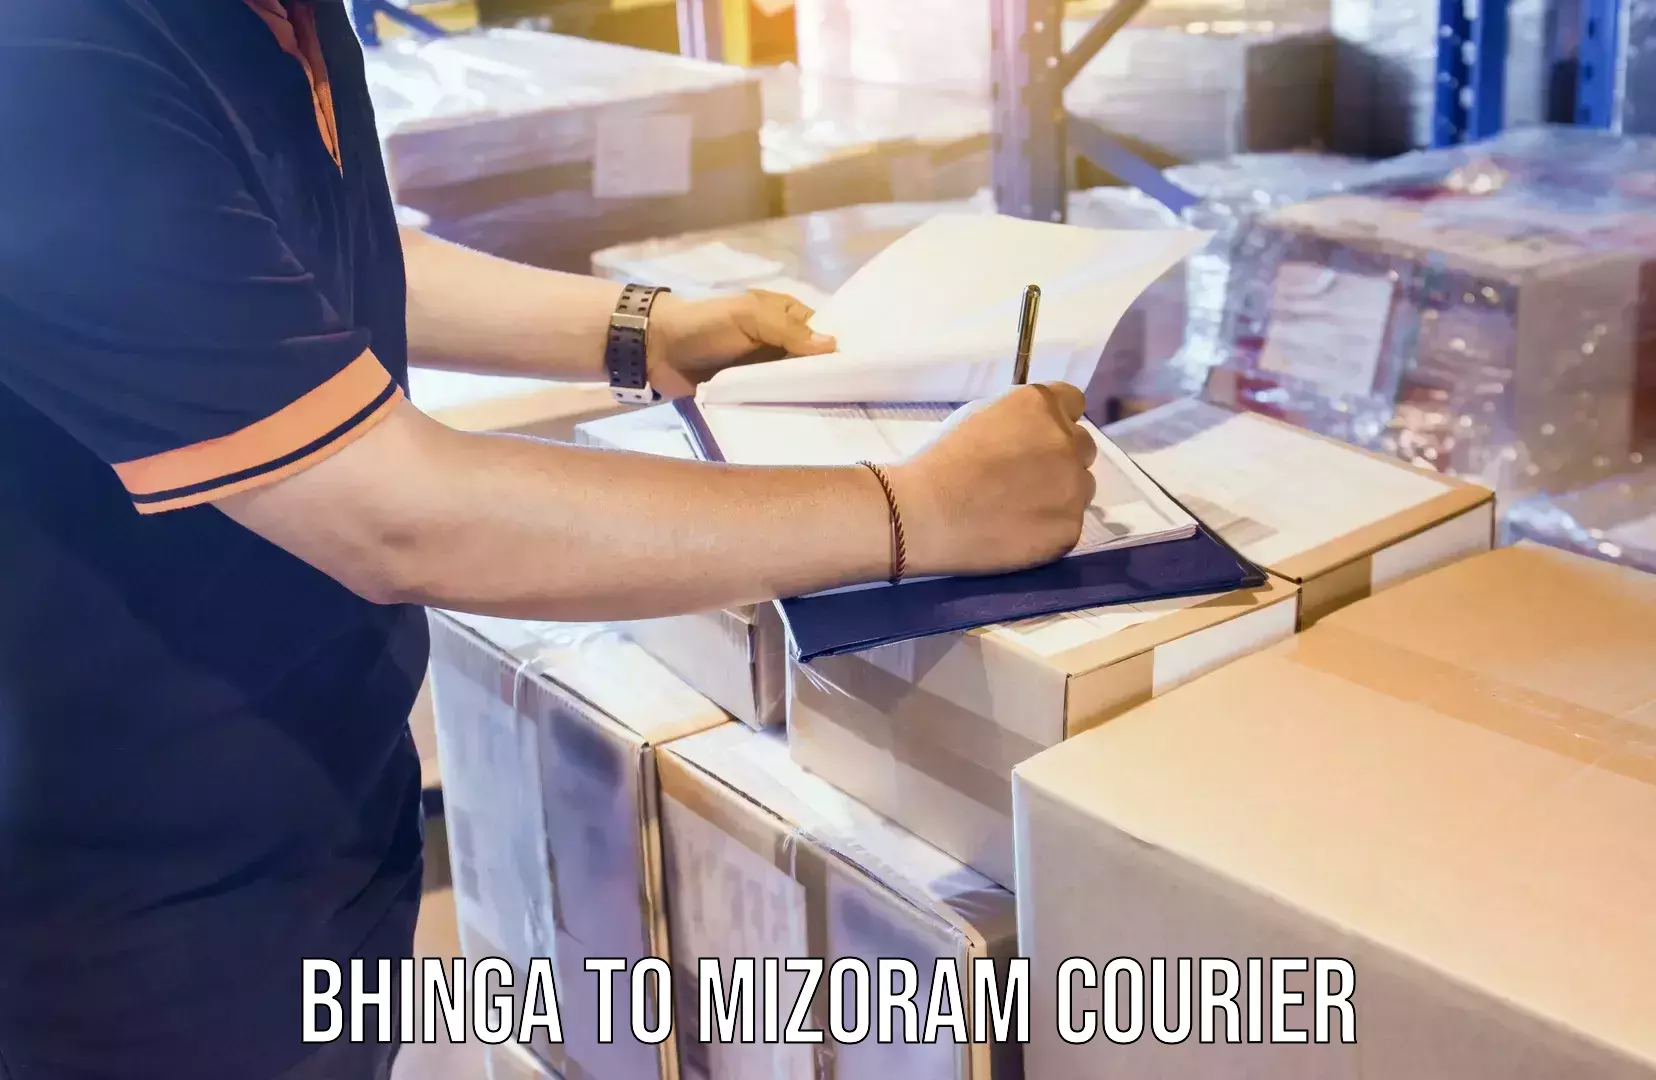 Expedited shipping methods Bhinga to Mizoram